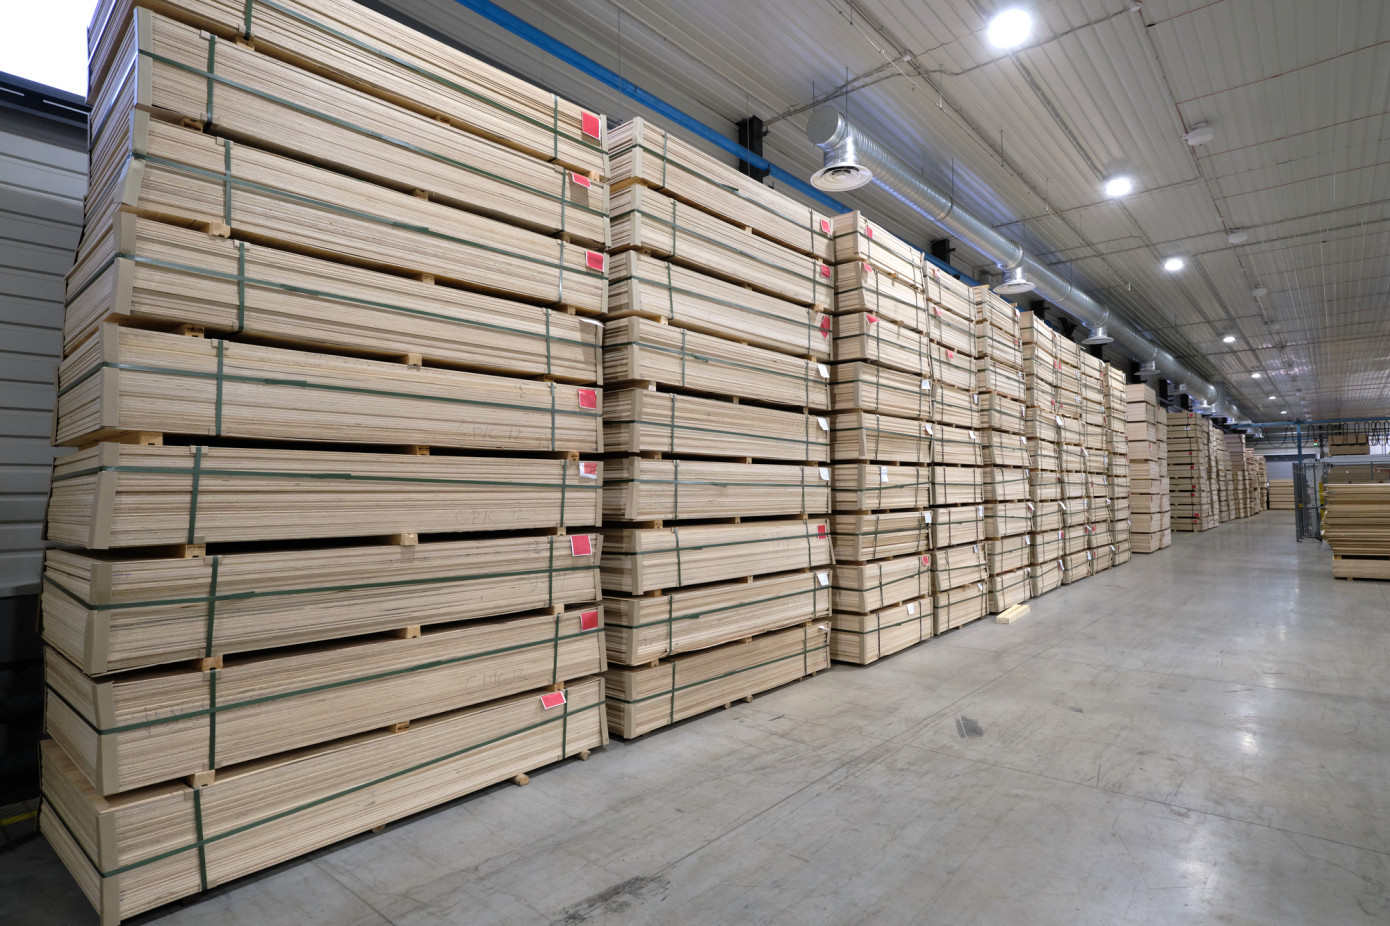 U.S. hardwood plywood imports decreased